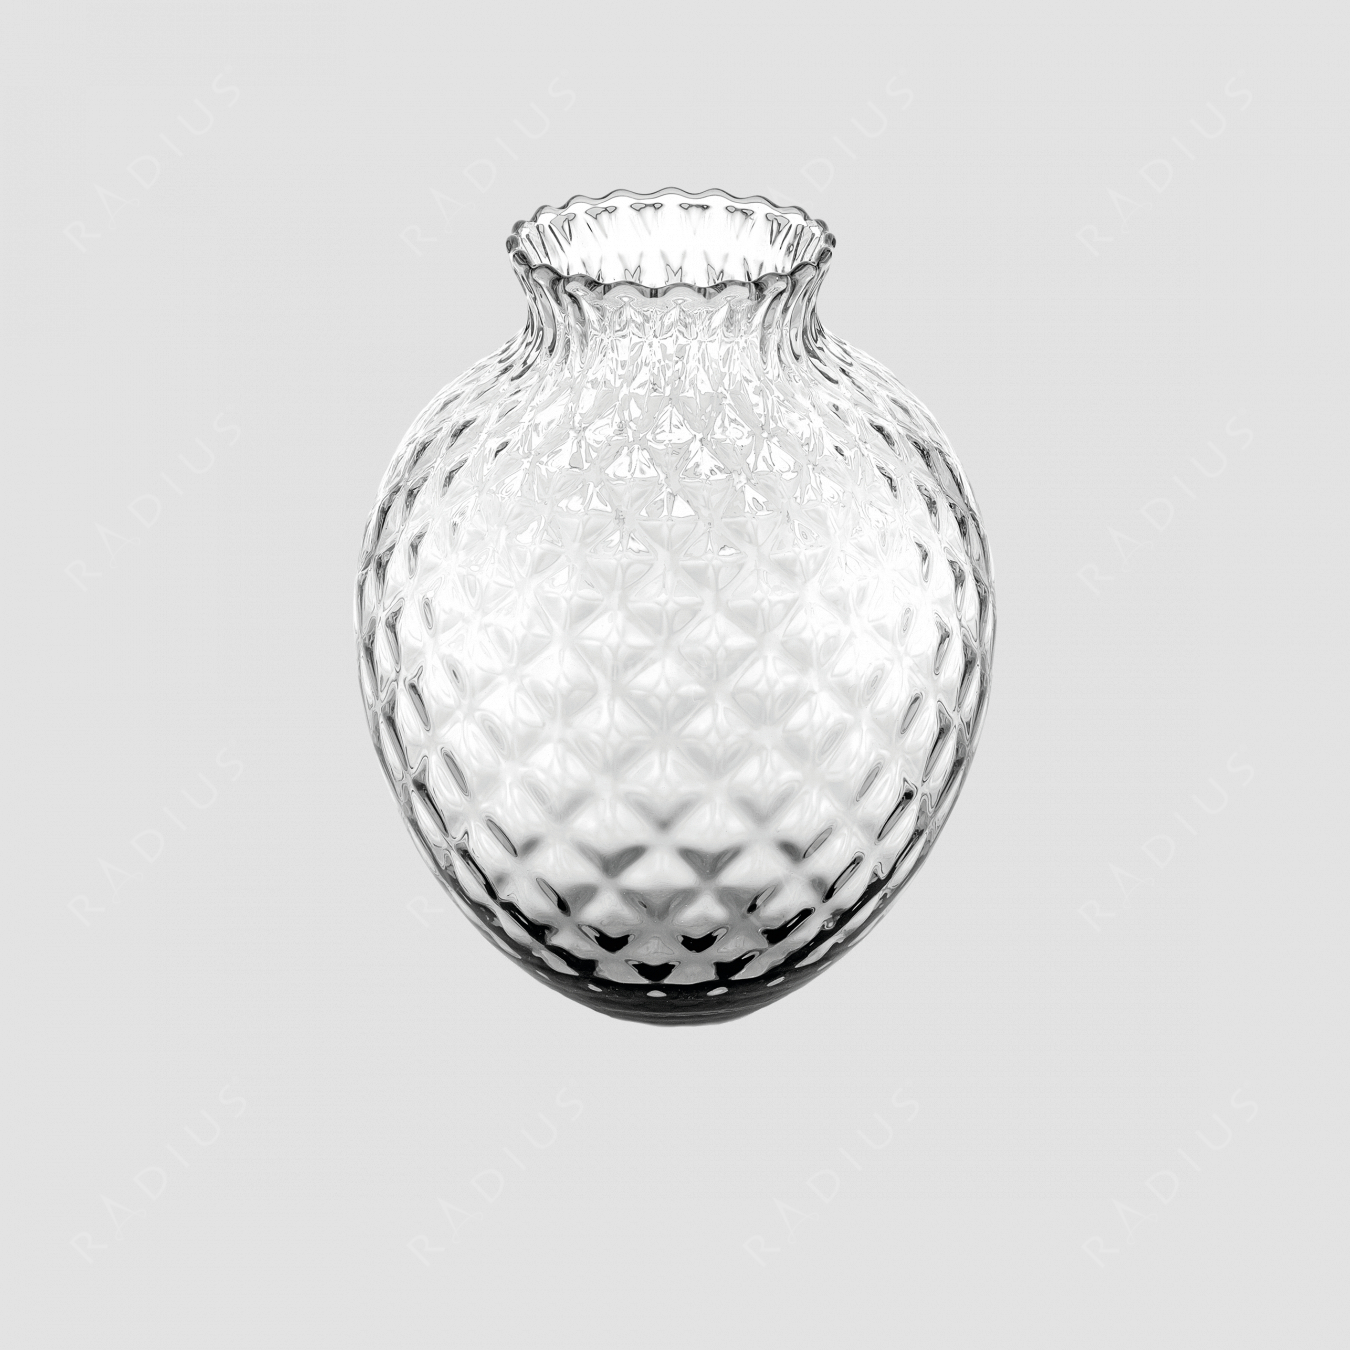 Стеклянная ваза для цветов, диаметр: 19,7 см, высота: 25 см, материал: стекло, серия Infiore, IVV (Italy), Италия